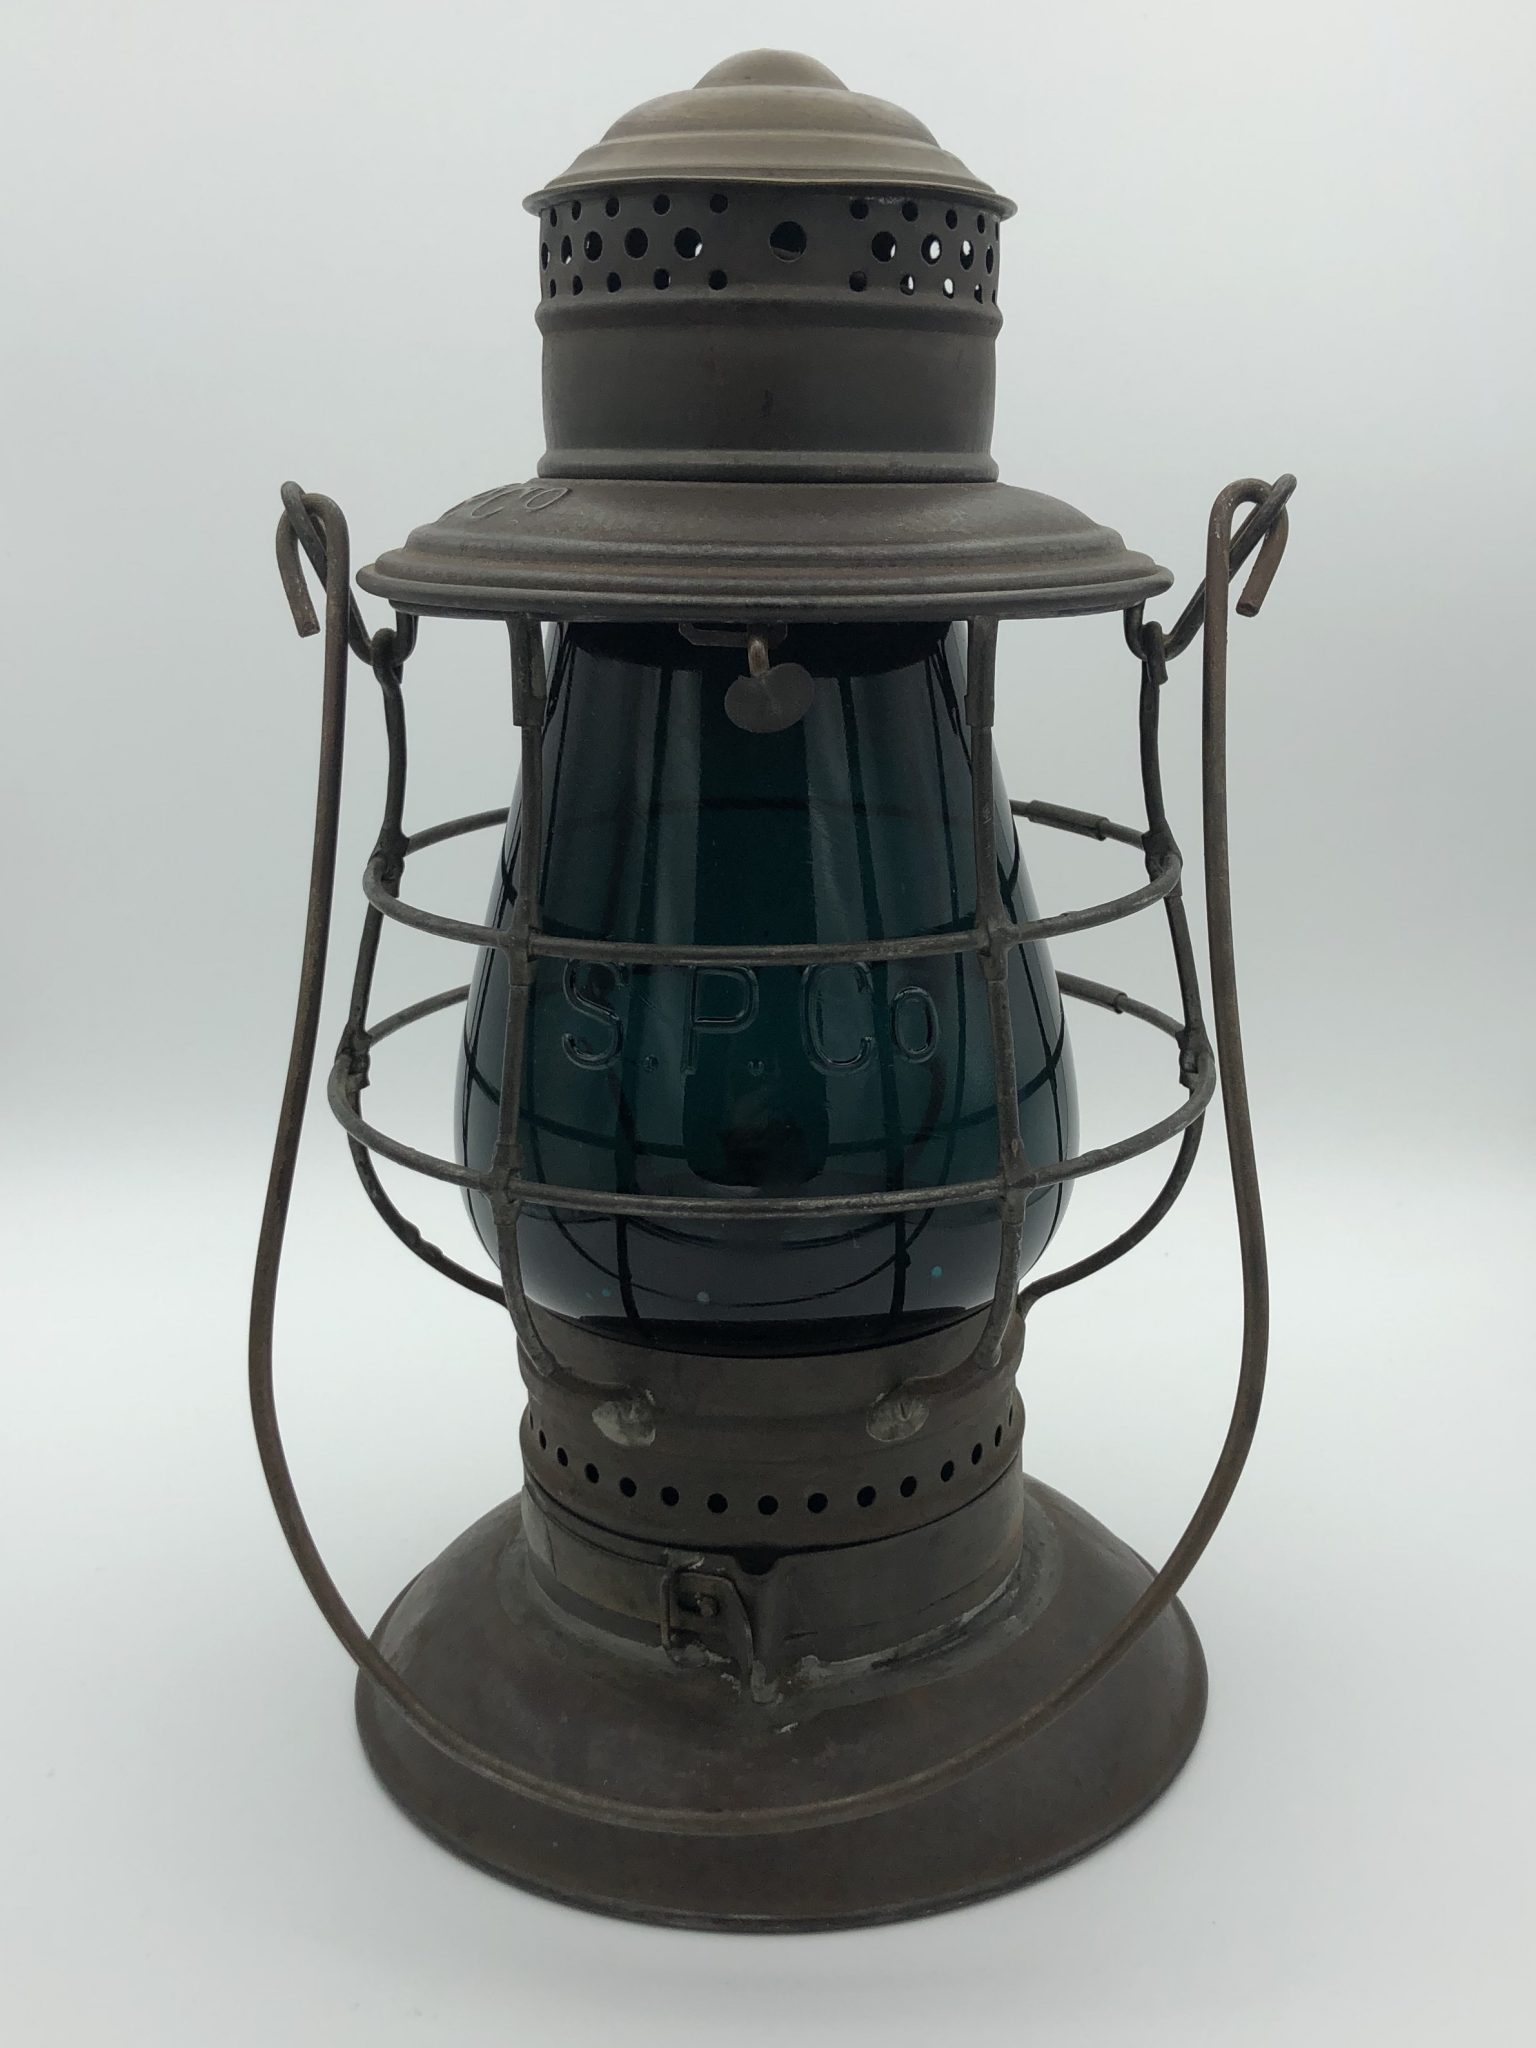 SP Co-Adams & Westlake-Brasstop-Railroad Lantern-Antique-Railroadiana-Green Cast Globe